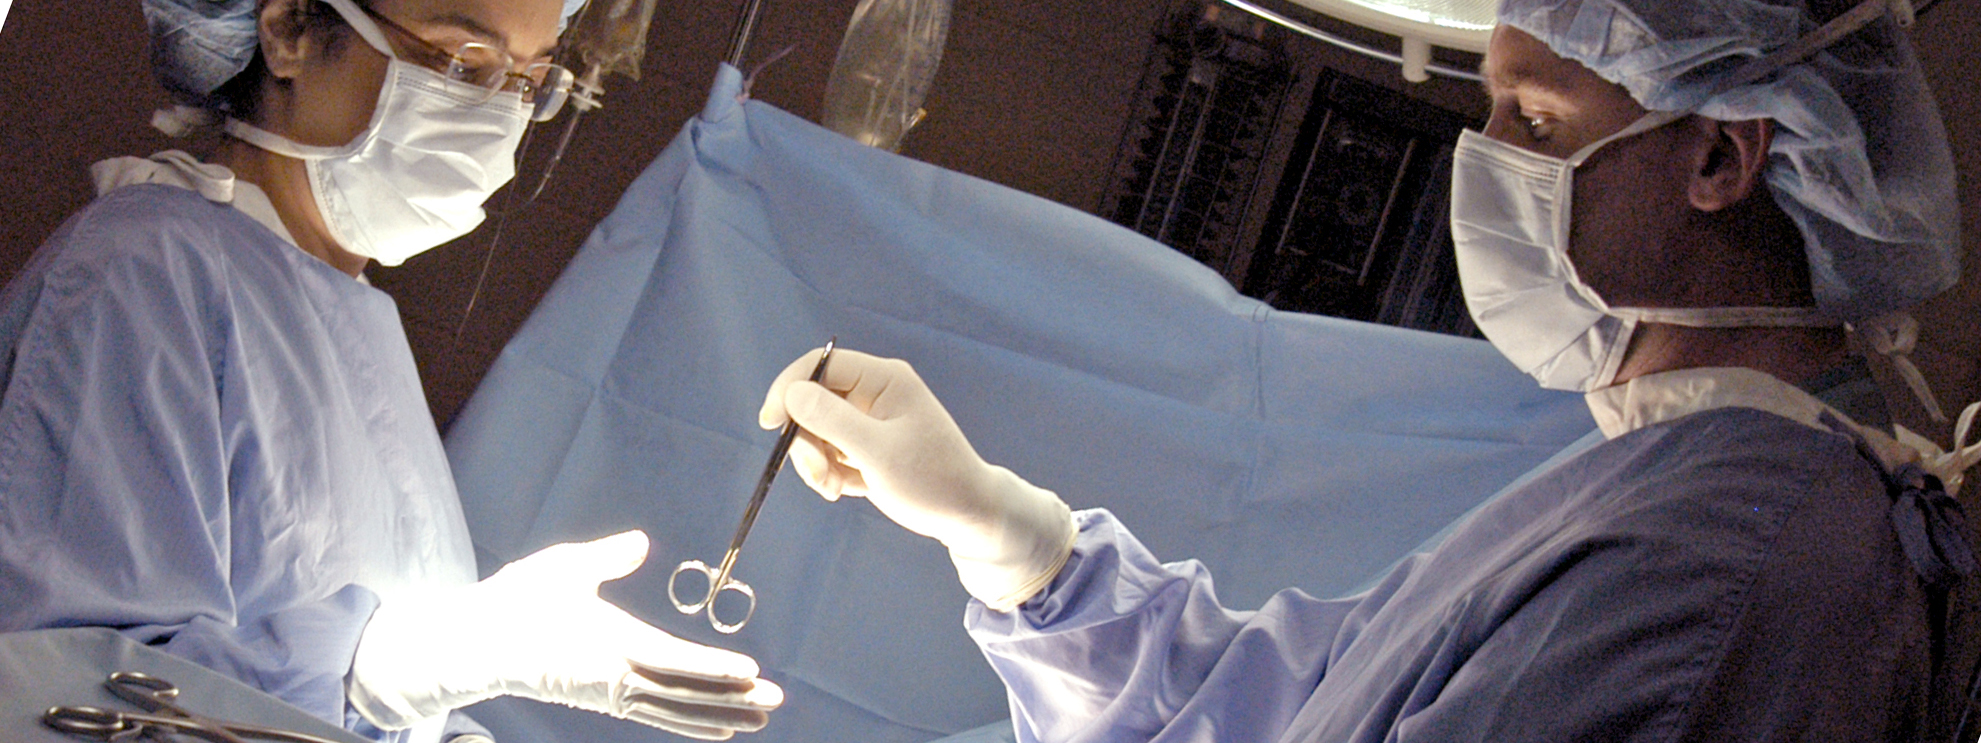 Surgeons during surgery